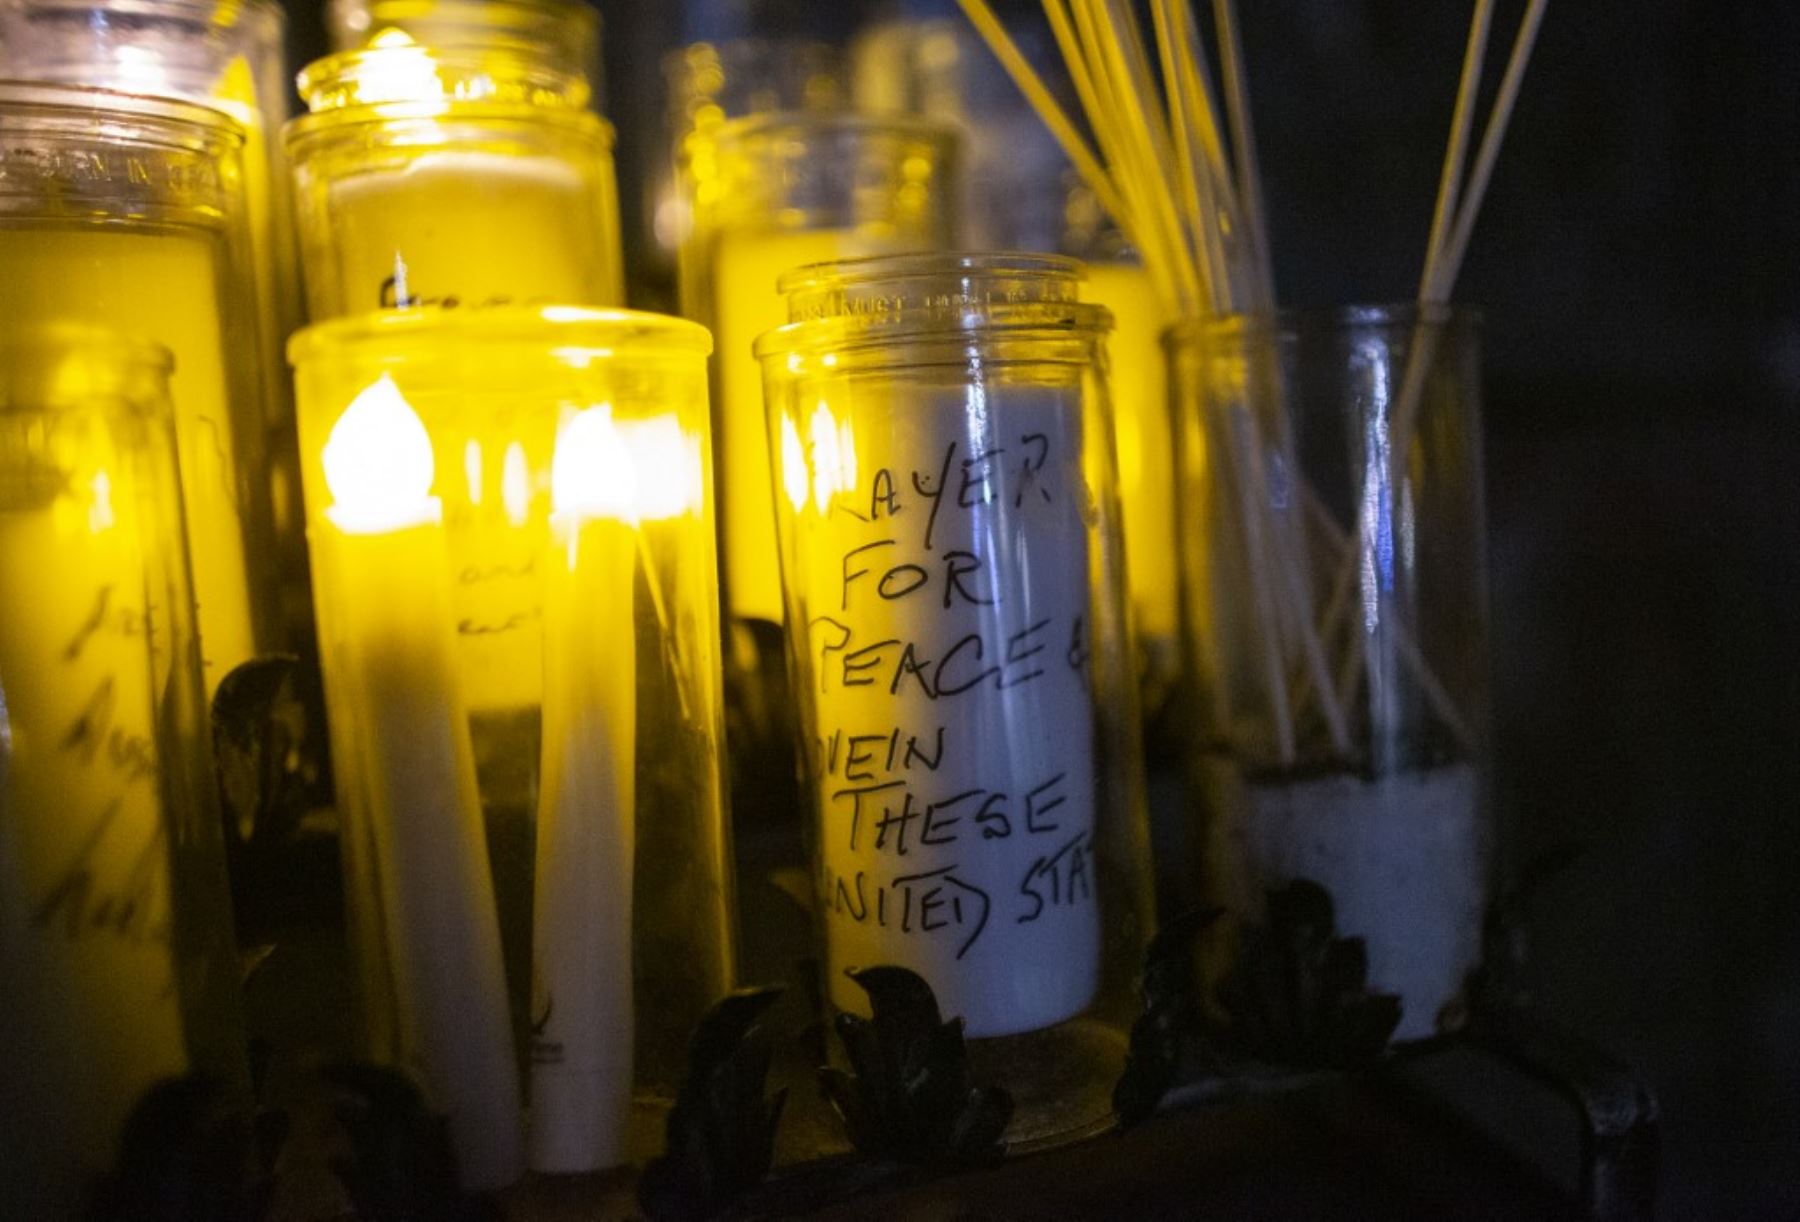 Velas con mensajes escritos se muestran durante una "Vigilia de Unidad" antes de la 59a ceremonia inaugural del presidente electo Joe Biden y la vicepresidenta electa Kamala Harris, en la Iglesia Catedral de San Juan el Divino en Nueva York. Foto: AFP